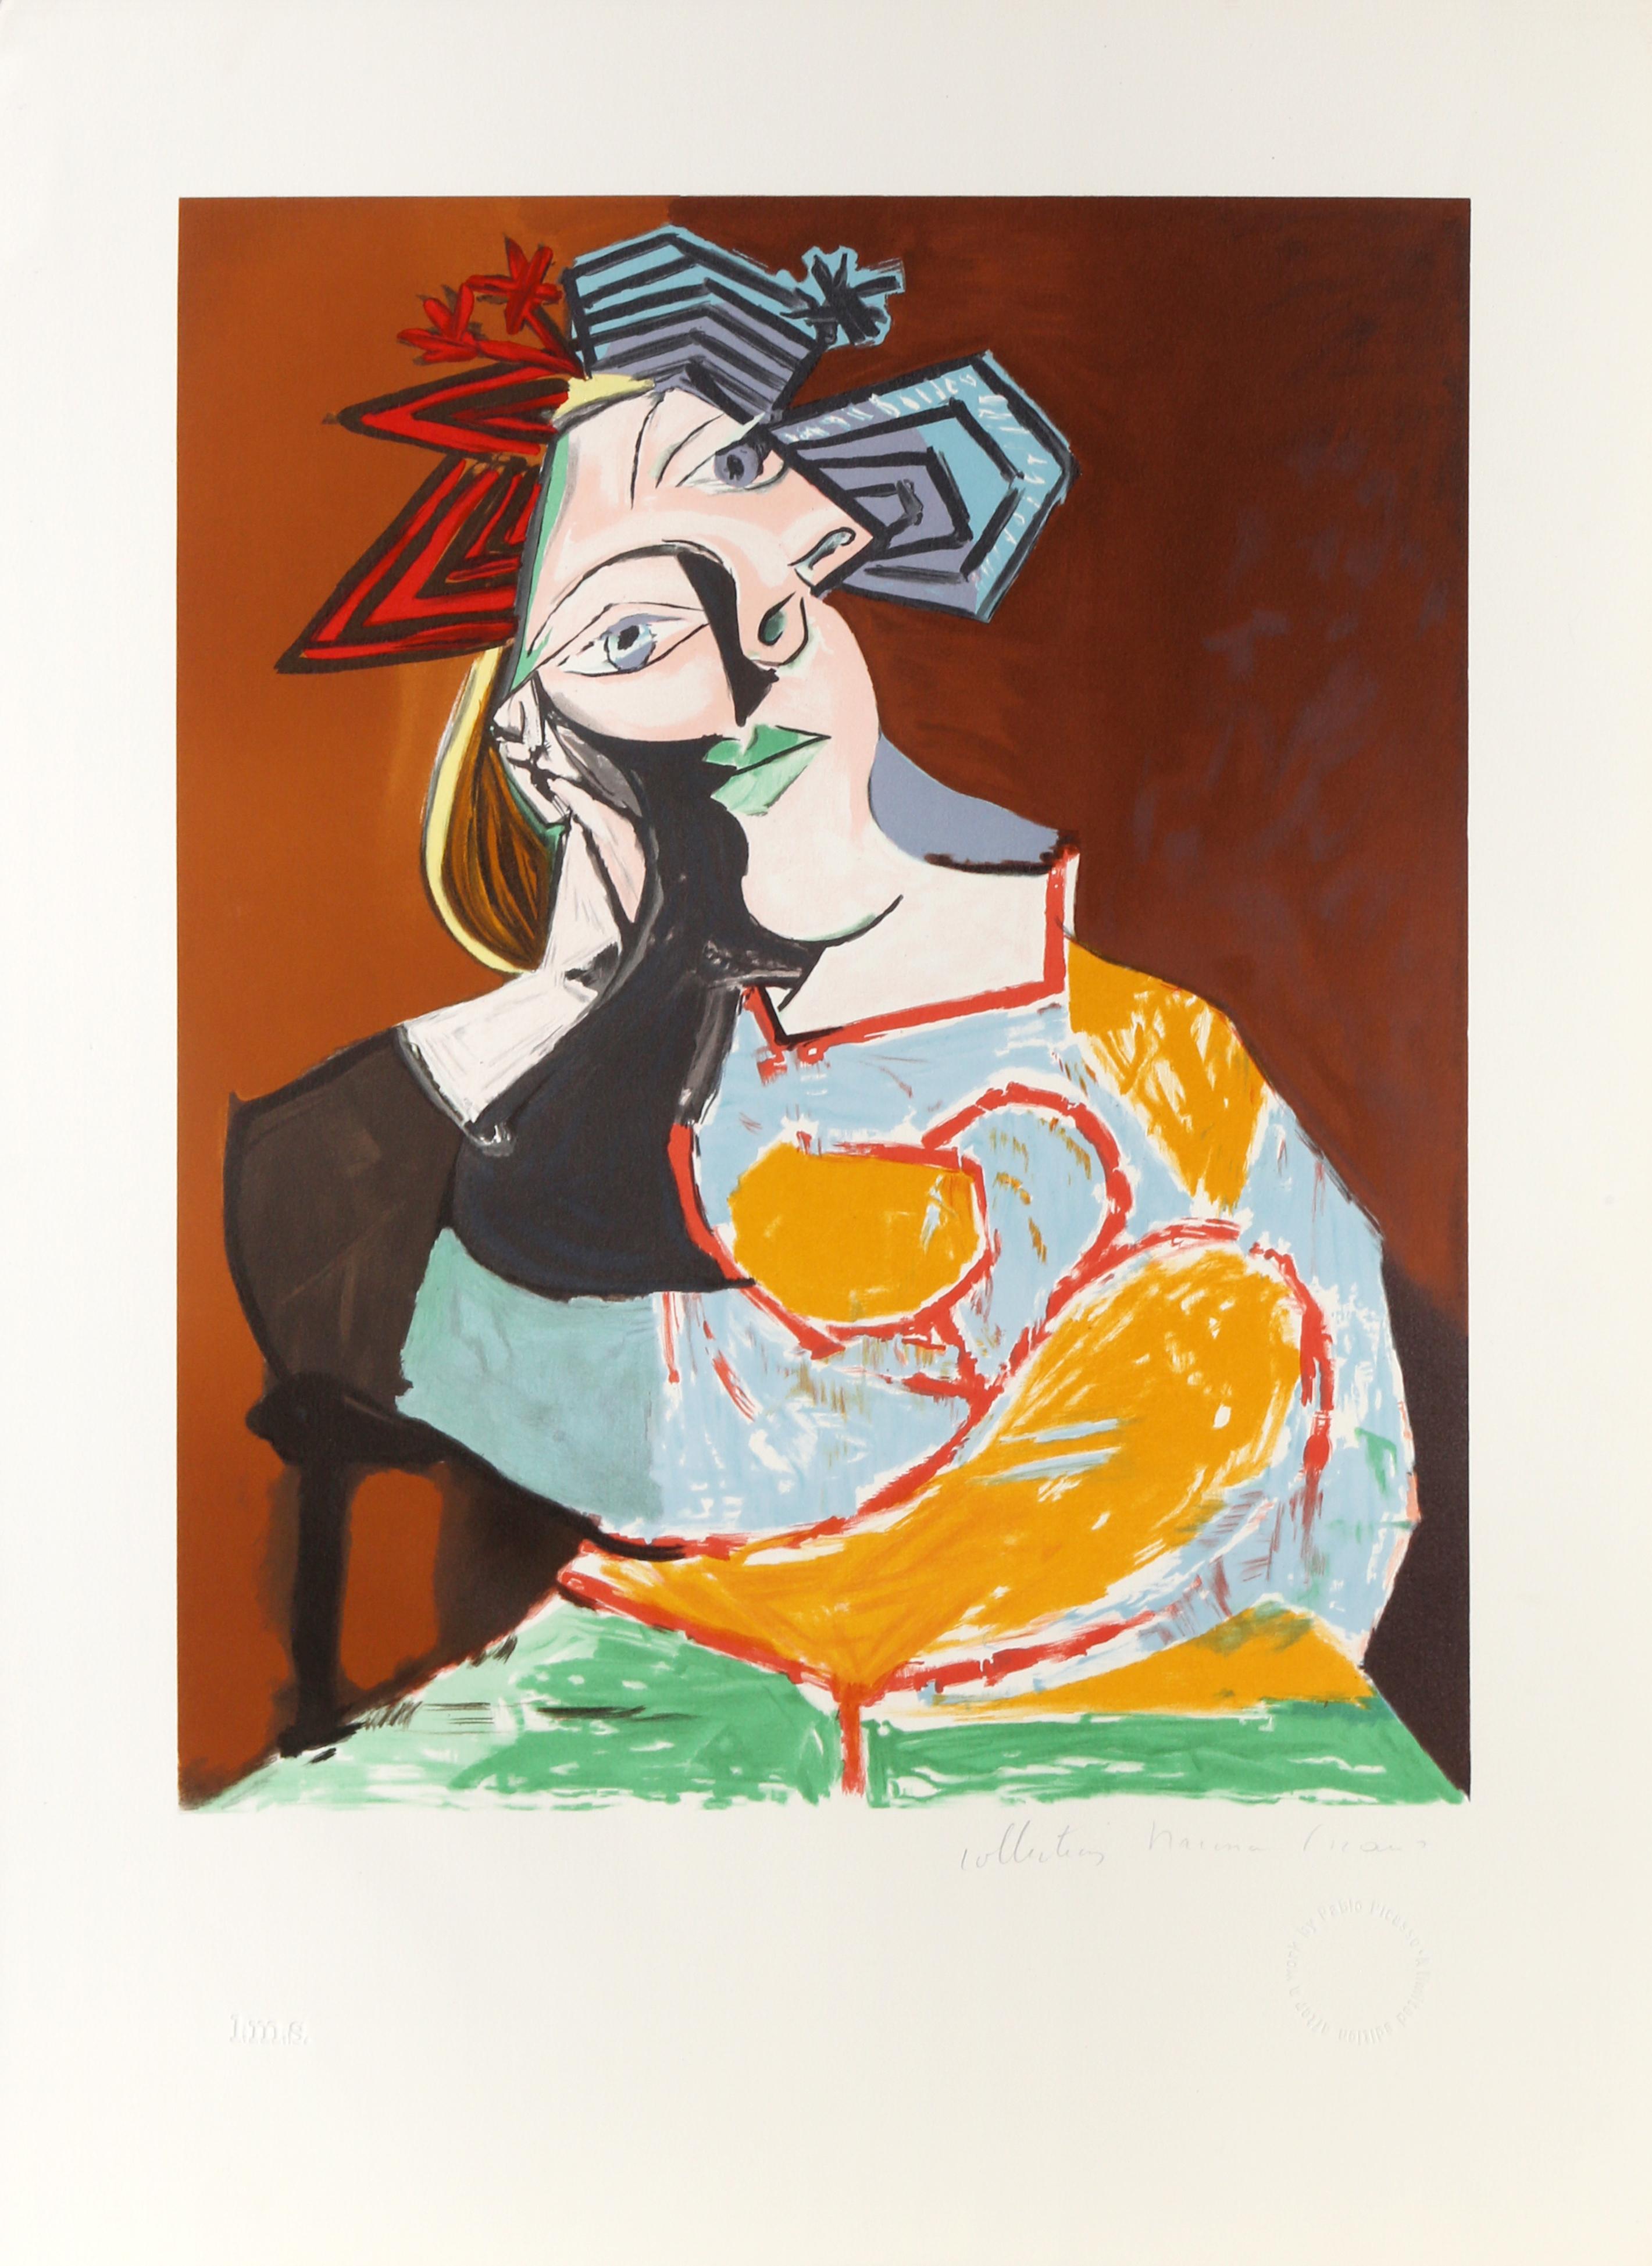 Die Frau auf diesem Bild von Pablo Picasso lehnt an einer blau-roten Fahne und starrt den Betrachter mit ihren großen blauen Augen an. Sie trägt ein gemustertes Gewand und wird durch mehrere geschwungene und rechteckige geometrische Formen